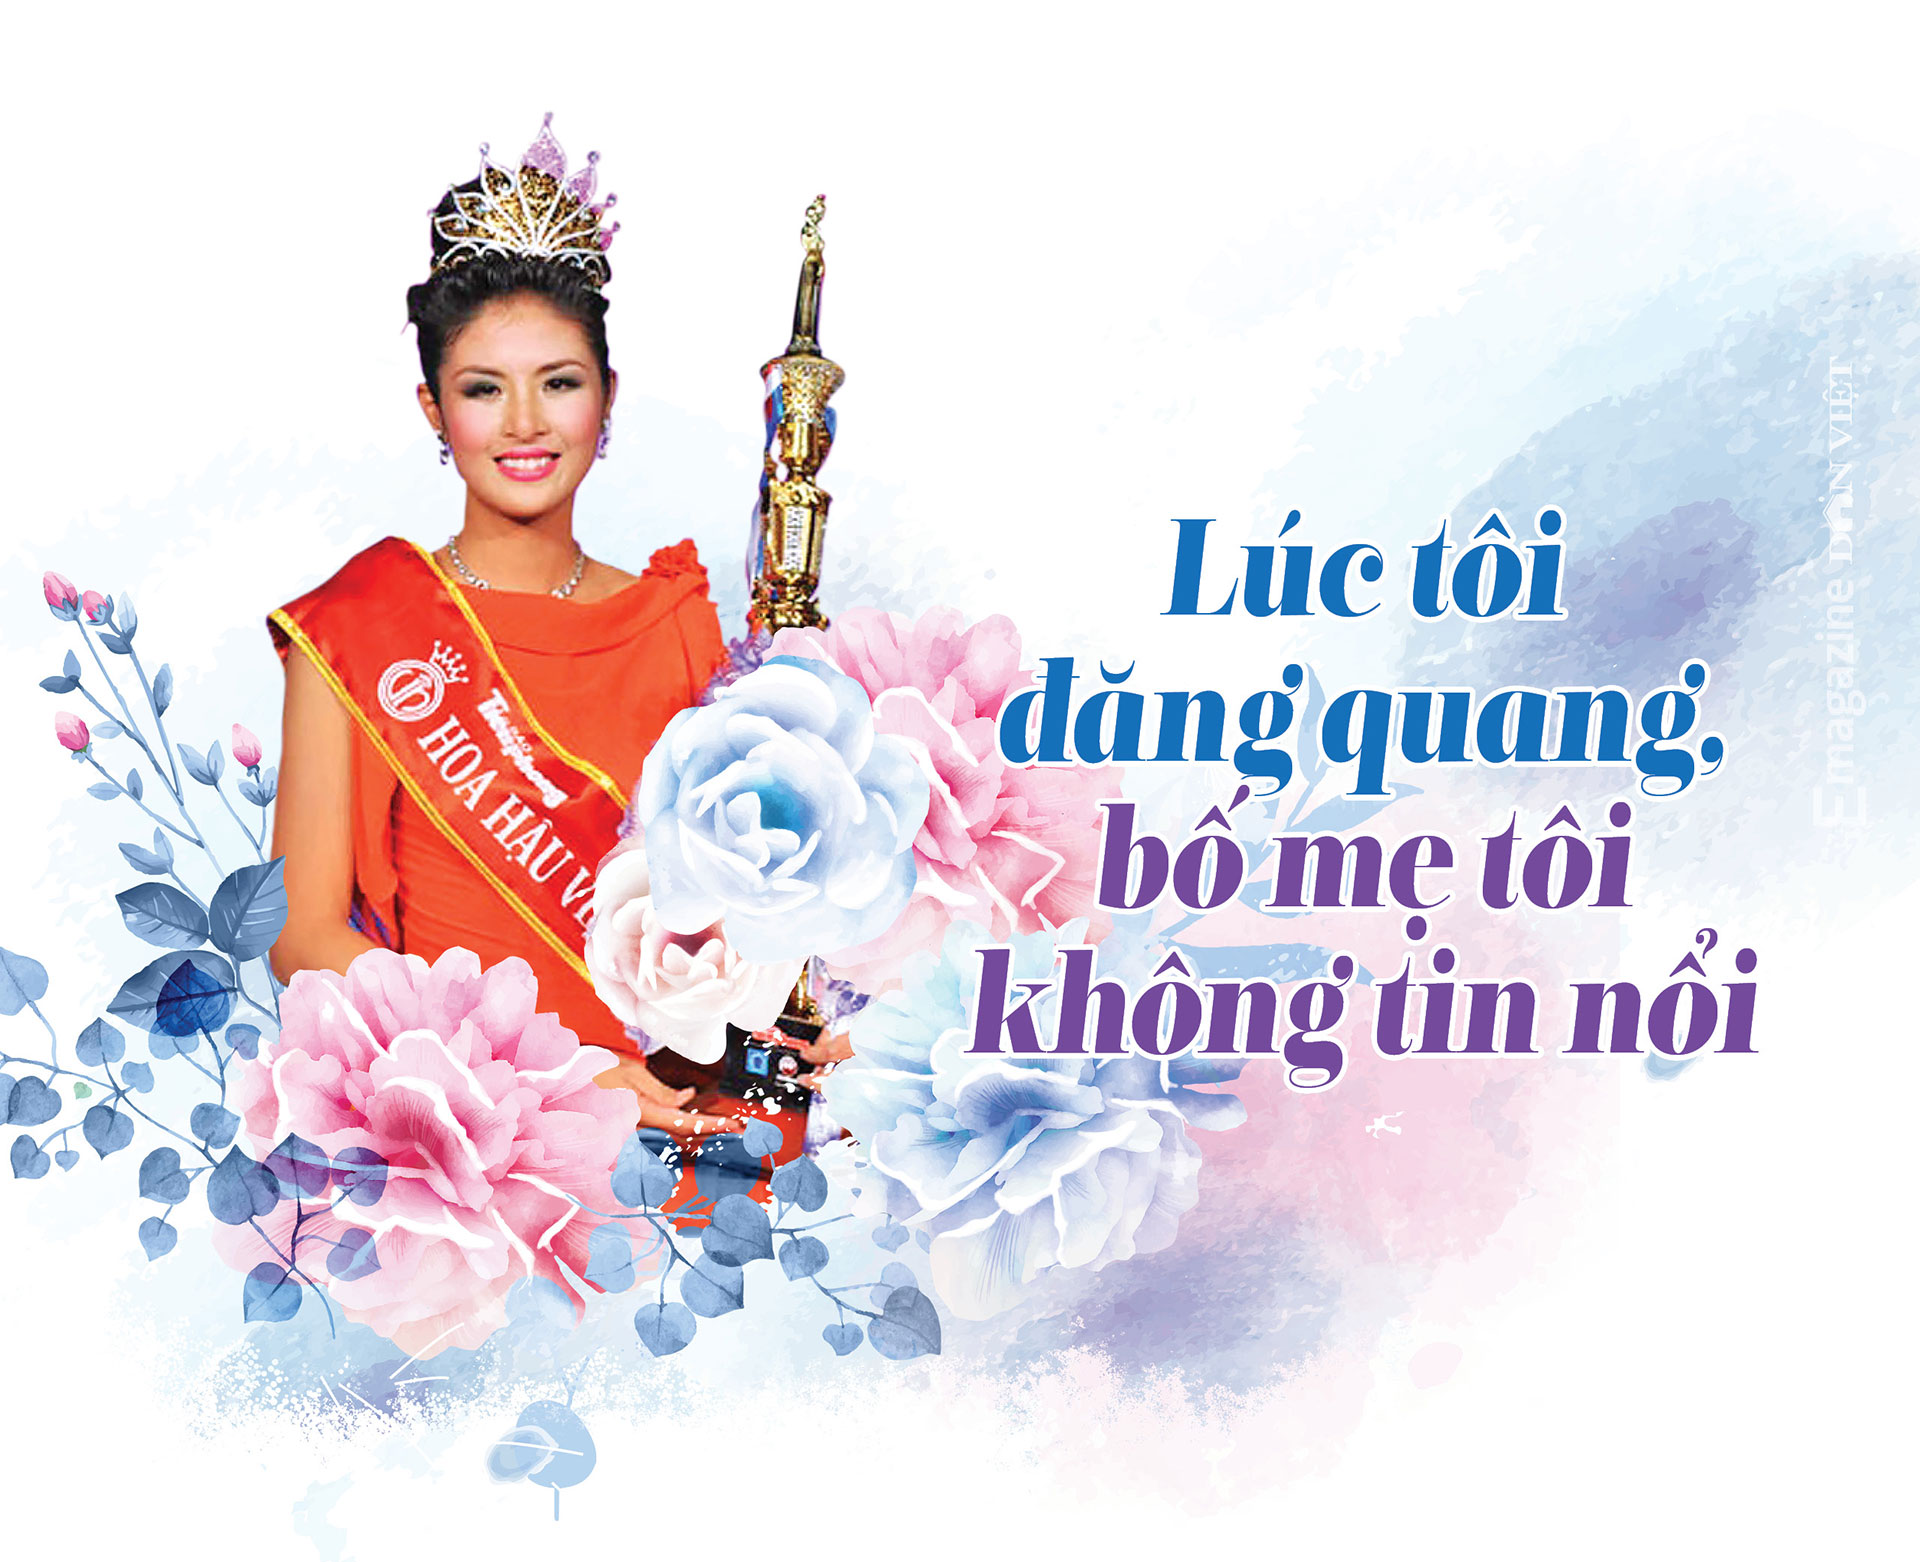 Hoa hậu Ngọc Hân: “Tôi từng thua lỗ khá nhiều vì chơi cổ phiếu” - Ảnh 1.